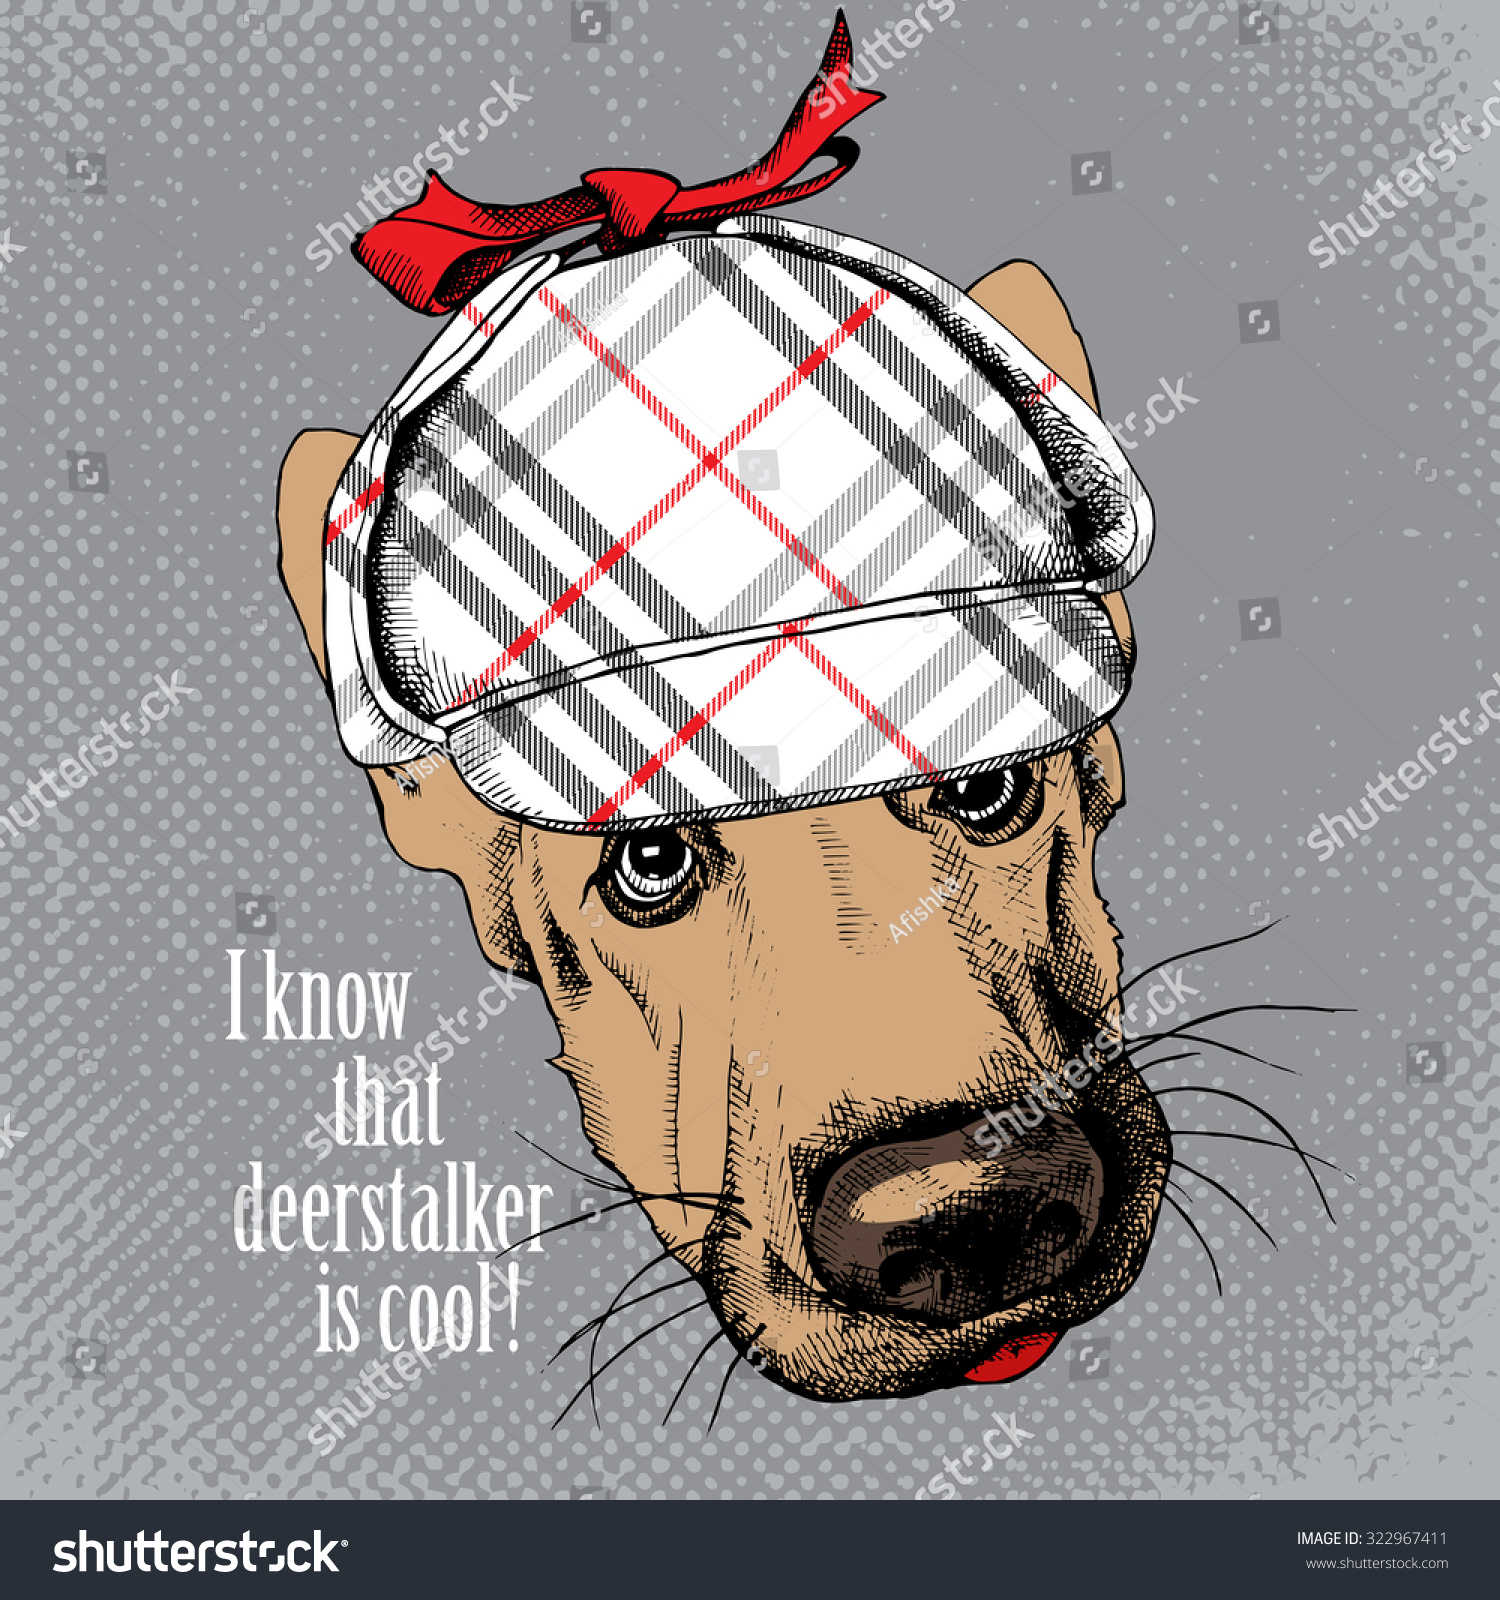 deerstalker hat for dogs